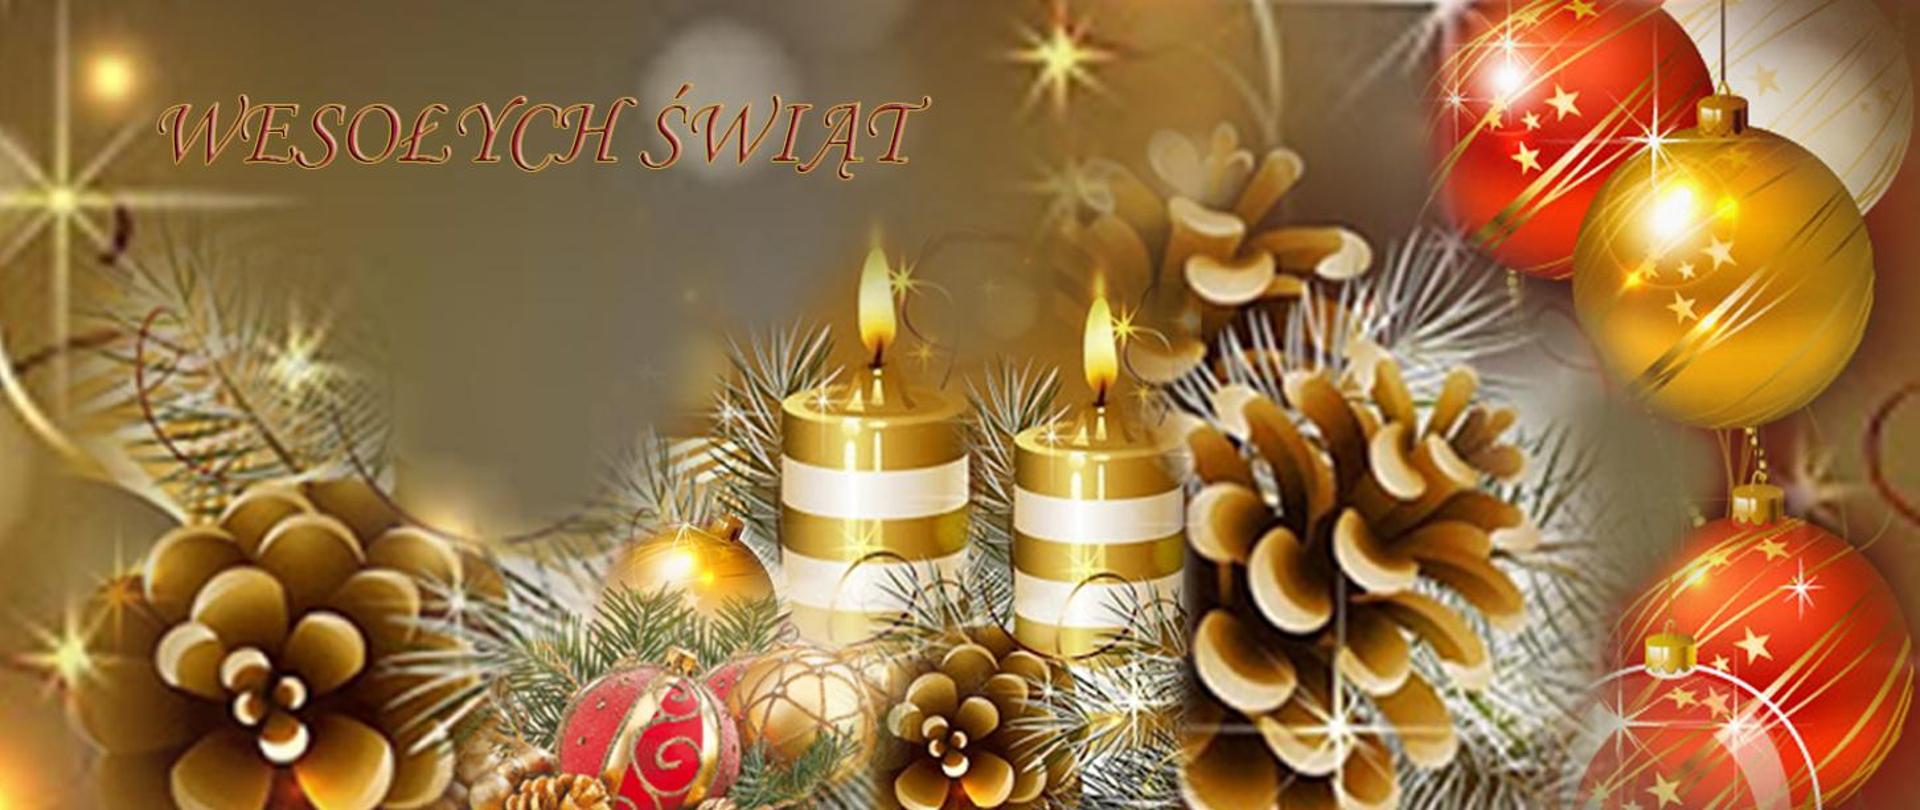 Zdjęcie przedstawia stroik świąteczny. Dekoracja złożona jest z dwóch palący się świec, bombek oraz szyszek w złotych odcieniach. 